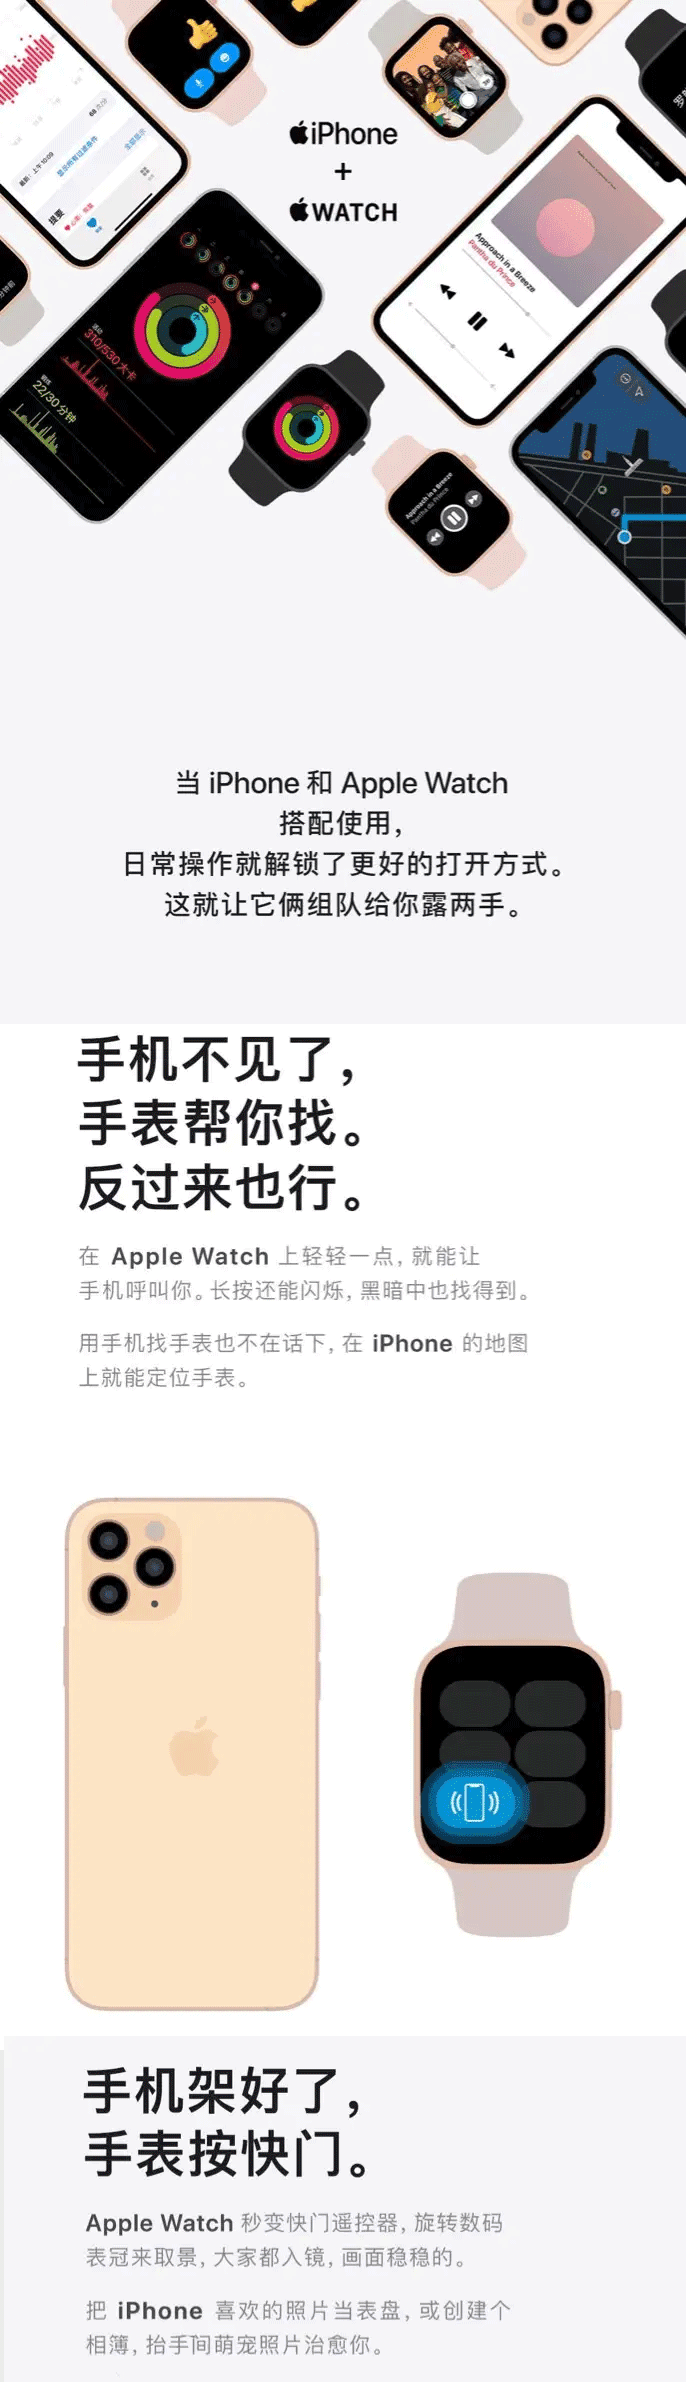 iPhone & Apple Watch 这对神队友互相助攻，技能翻倍。(图1)